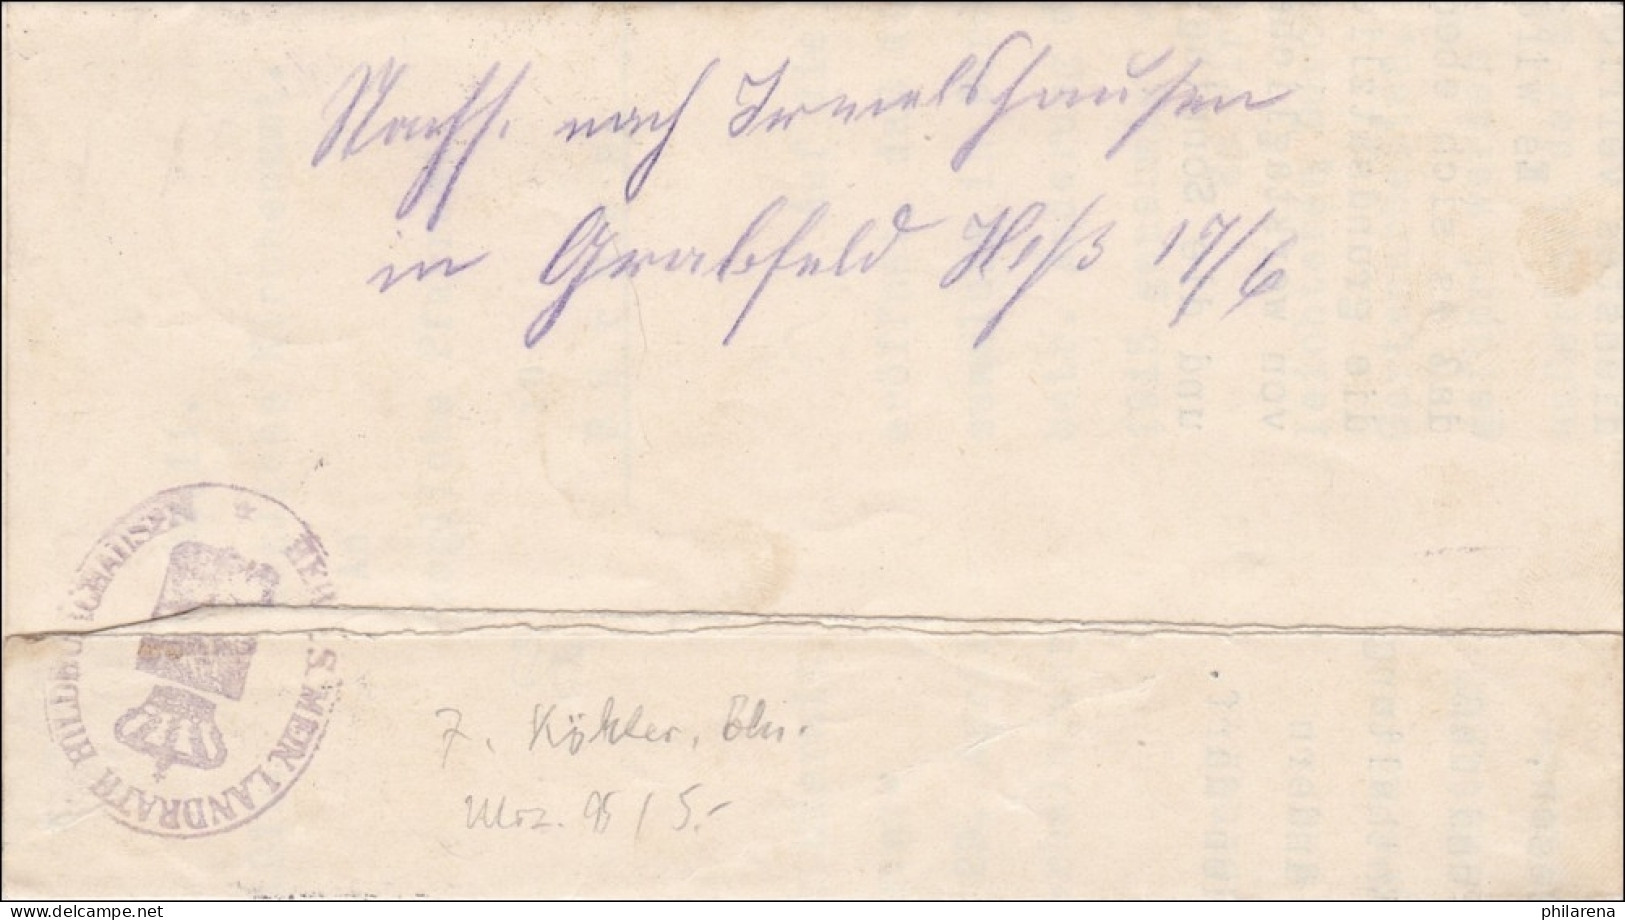 Hildburghausen 1915 Vom Herzoglichen Landrat Nach Bürden - Lettres & Documents